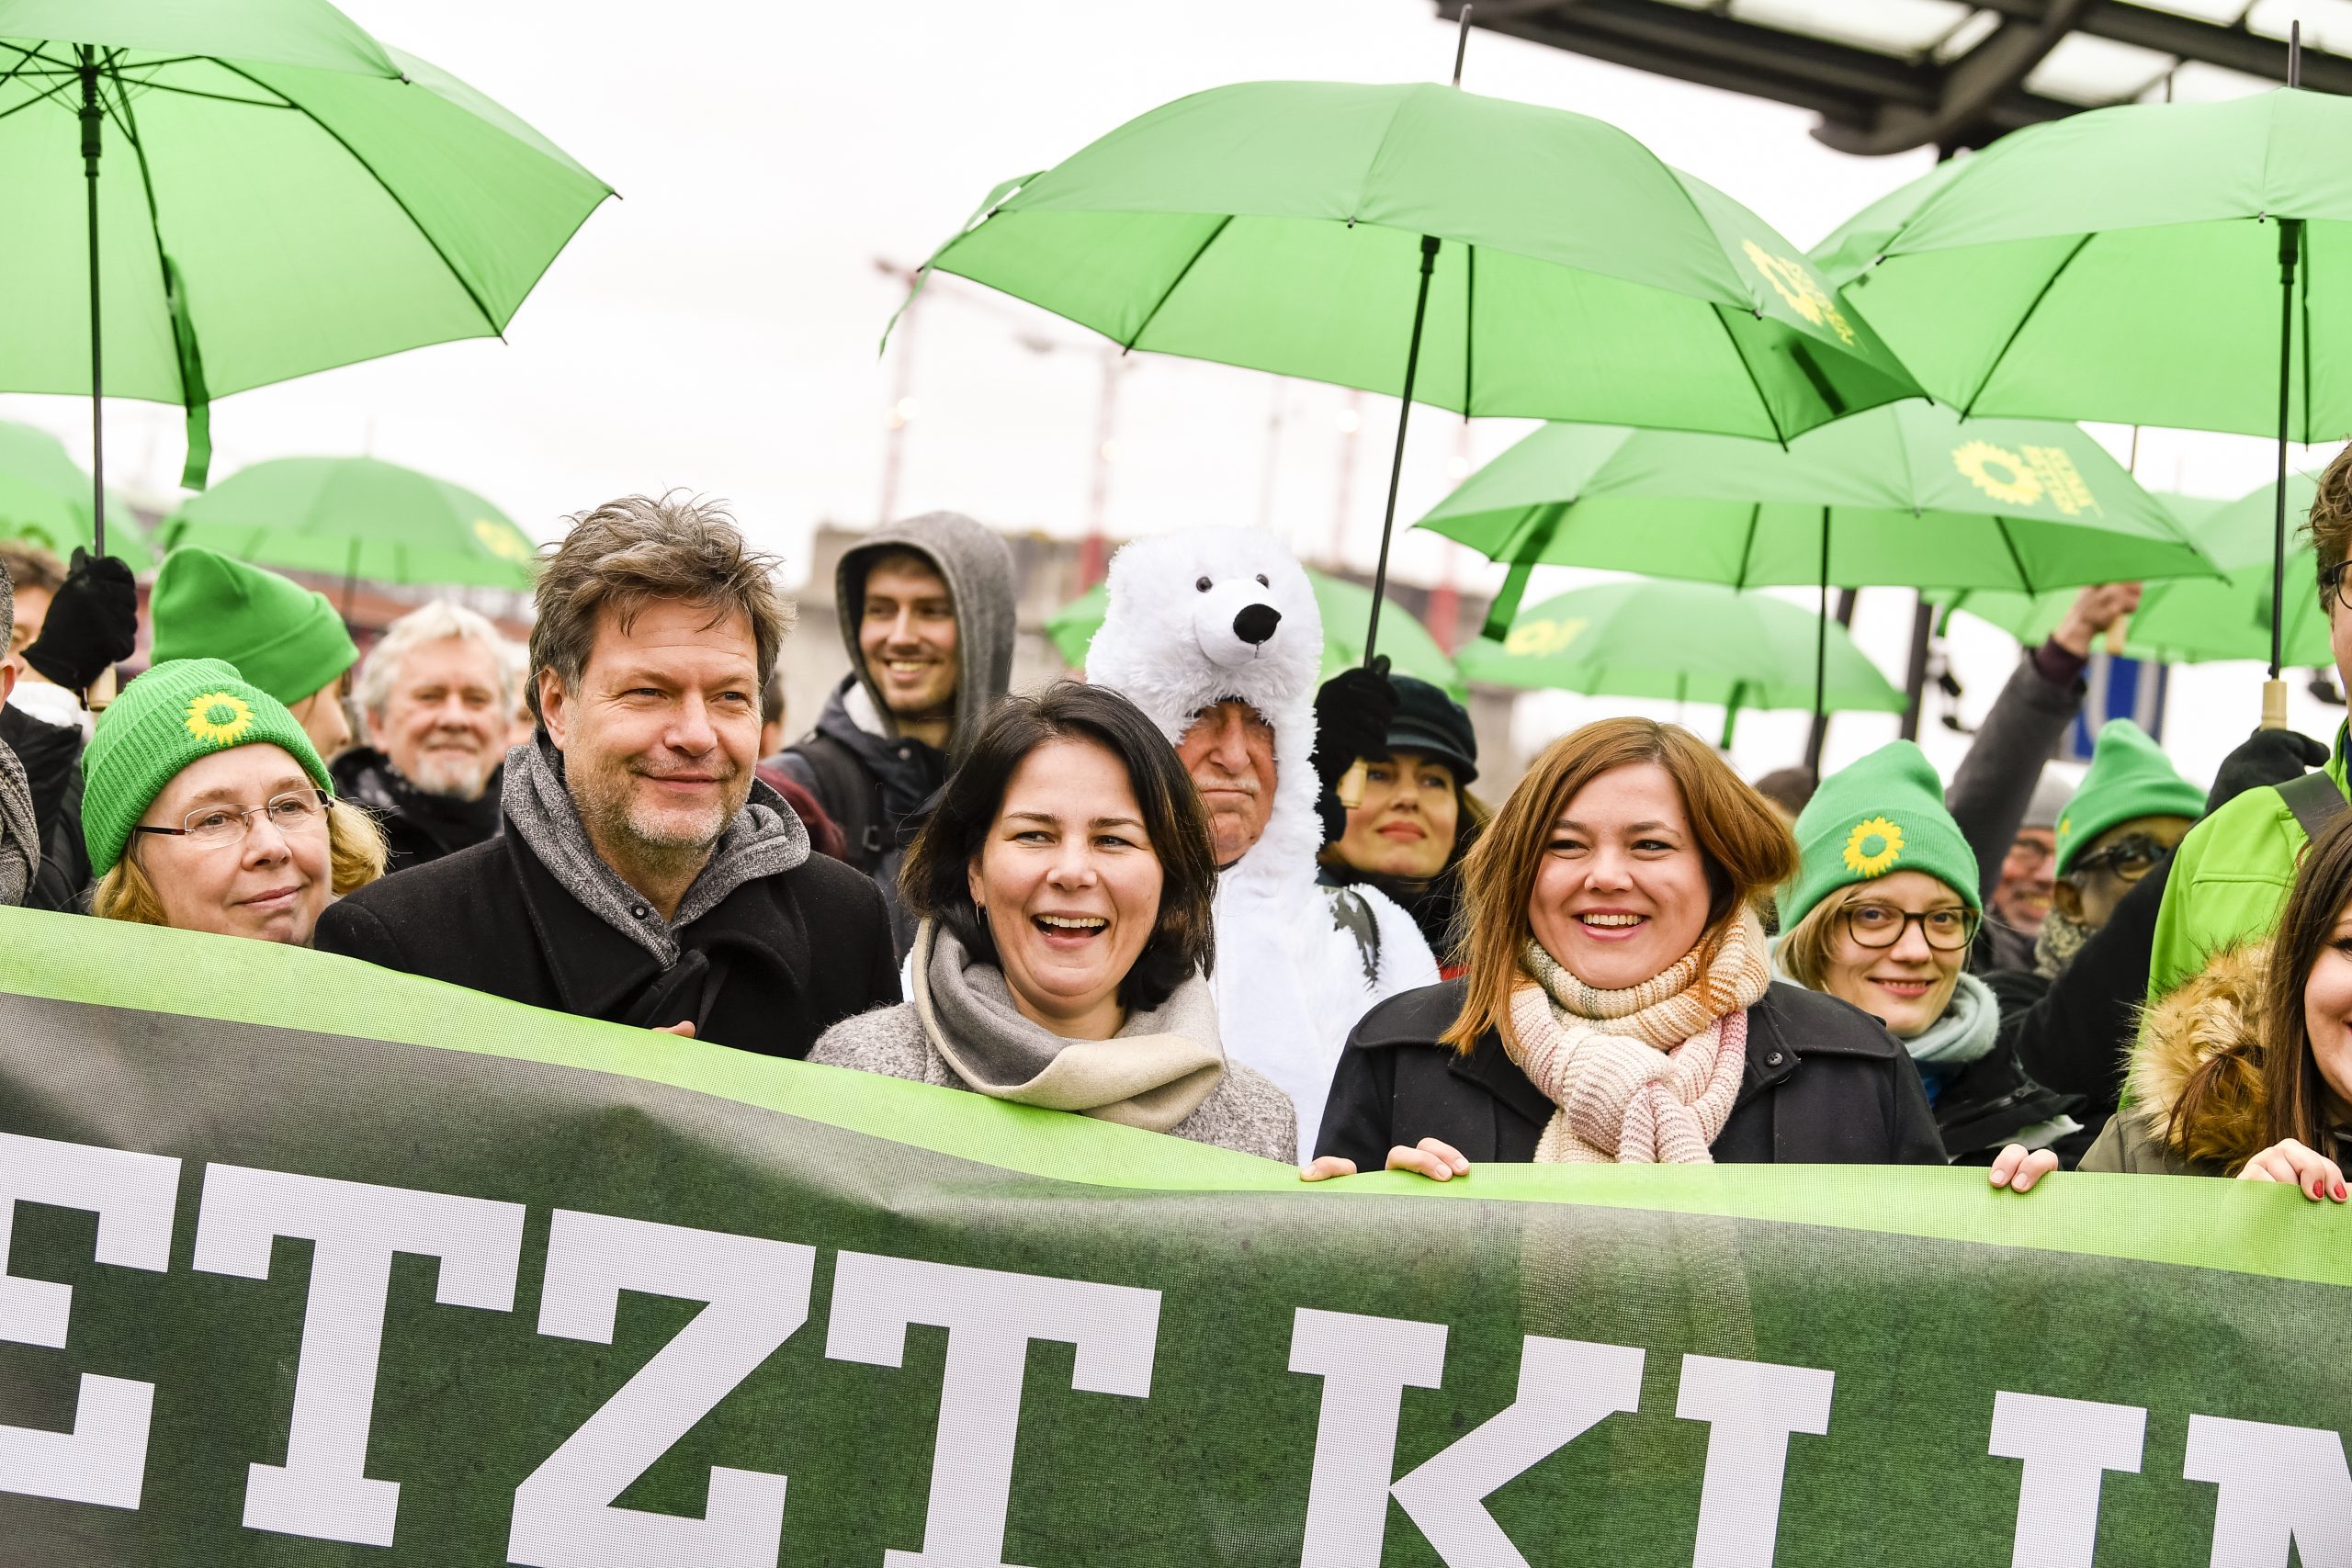  Annalena Baerbock (midden) bij een demonstratie tegen klimaatverandering in Hamburg in februari 2020. Foto: EPA/Martin Ziemer